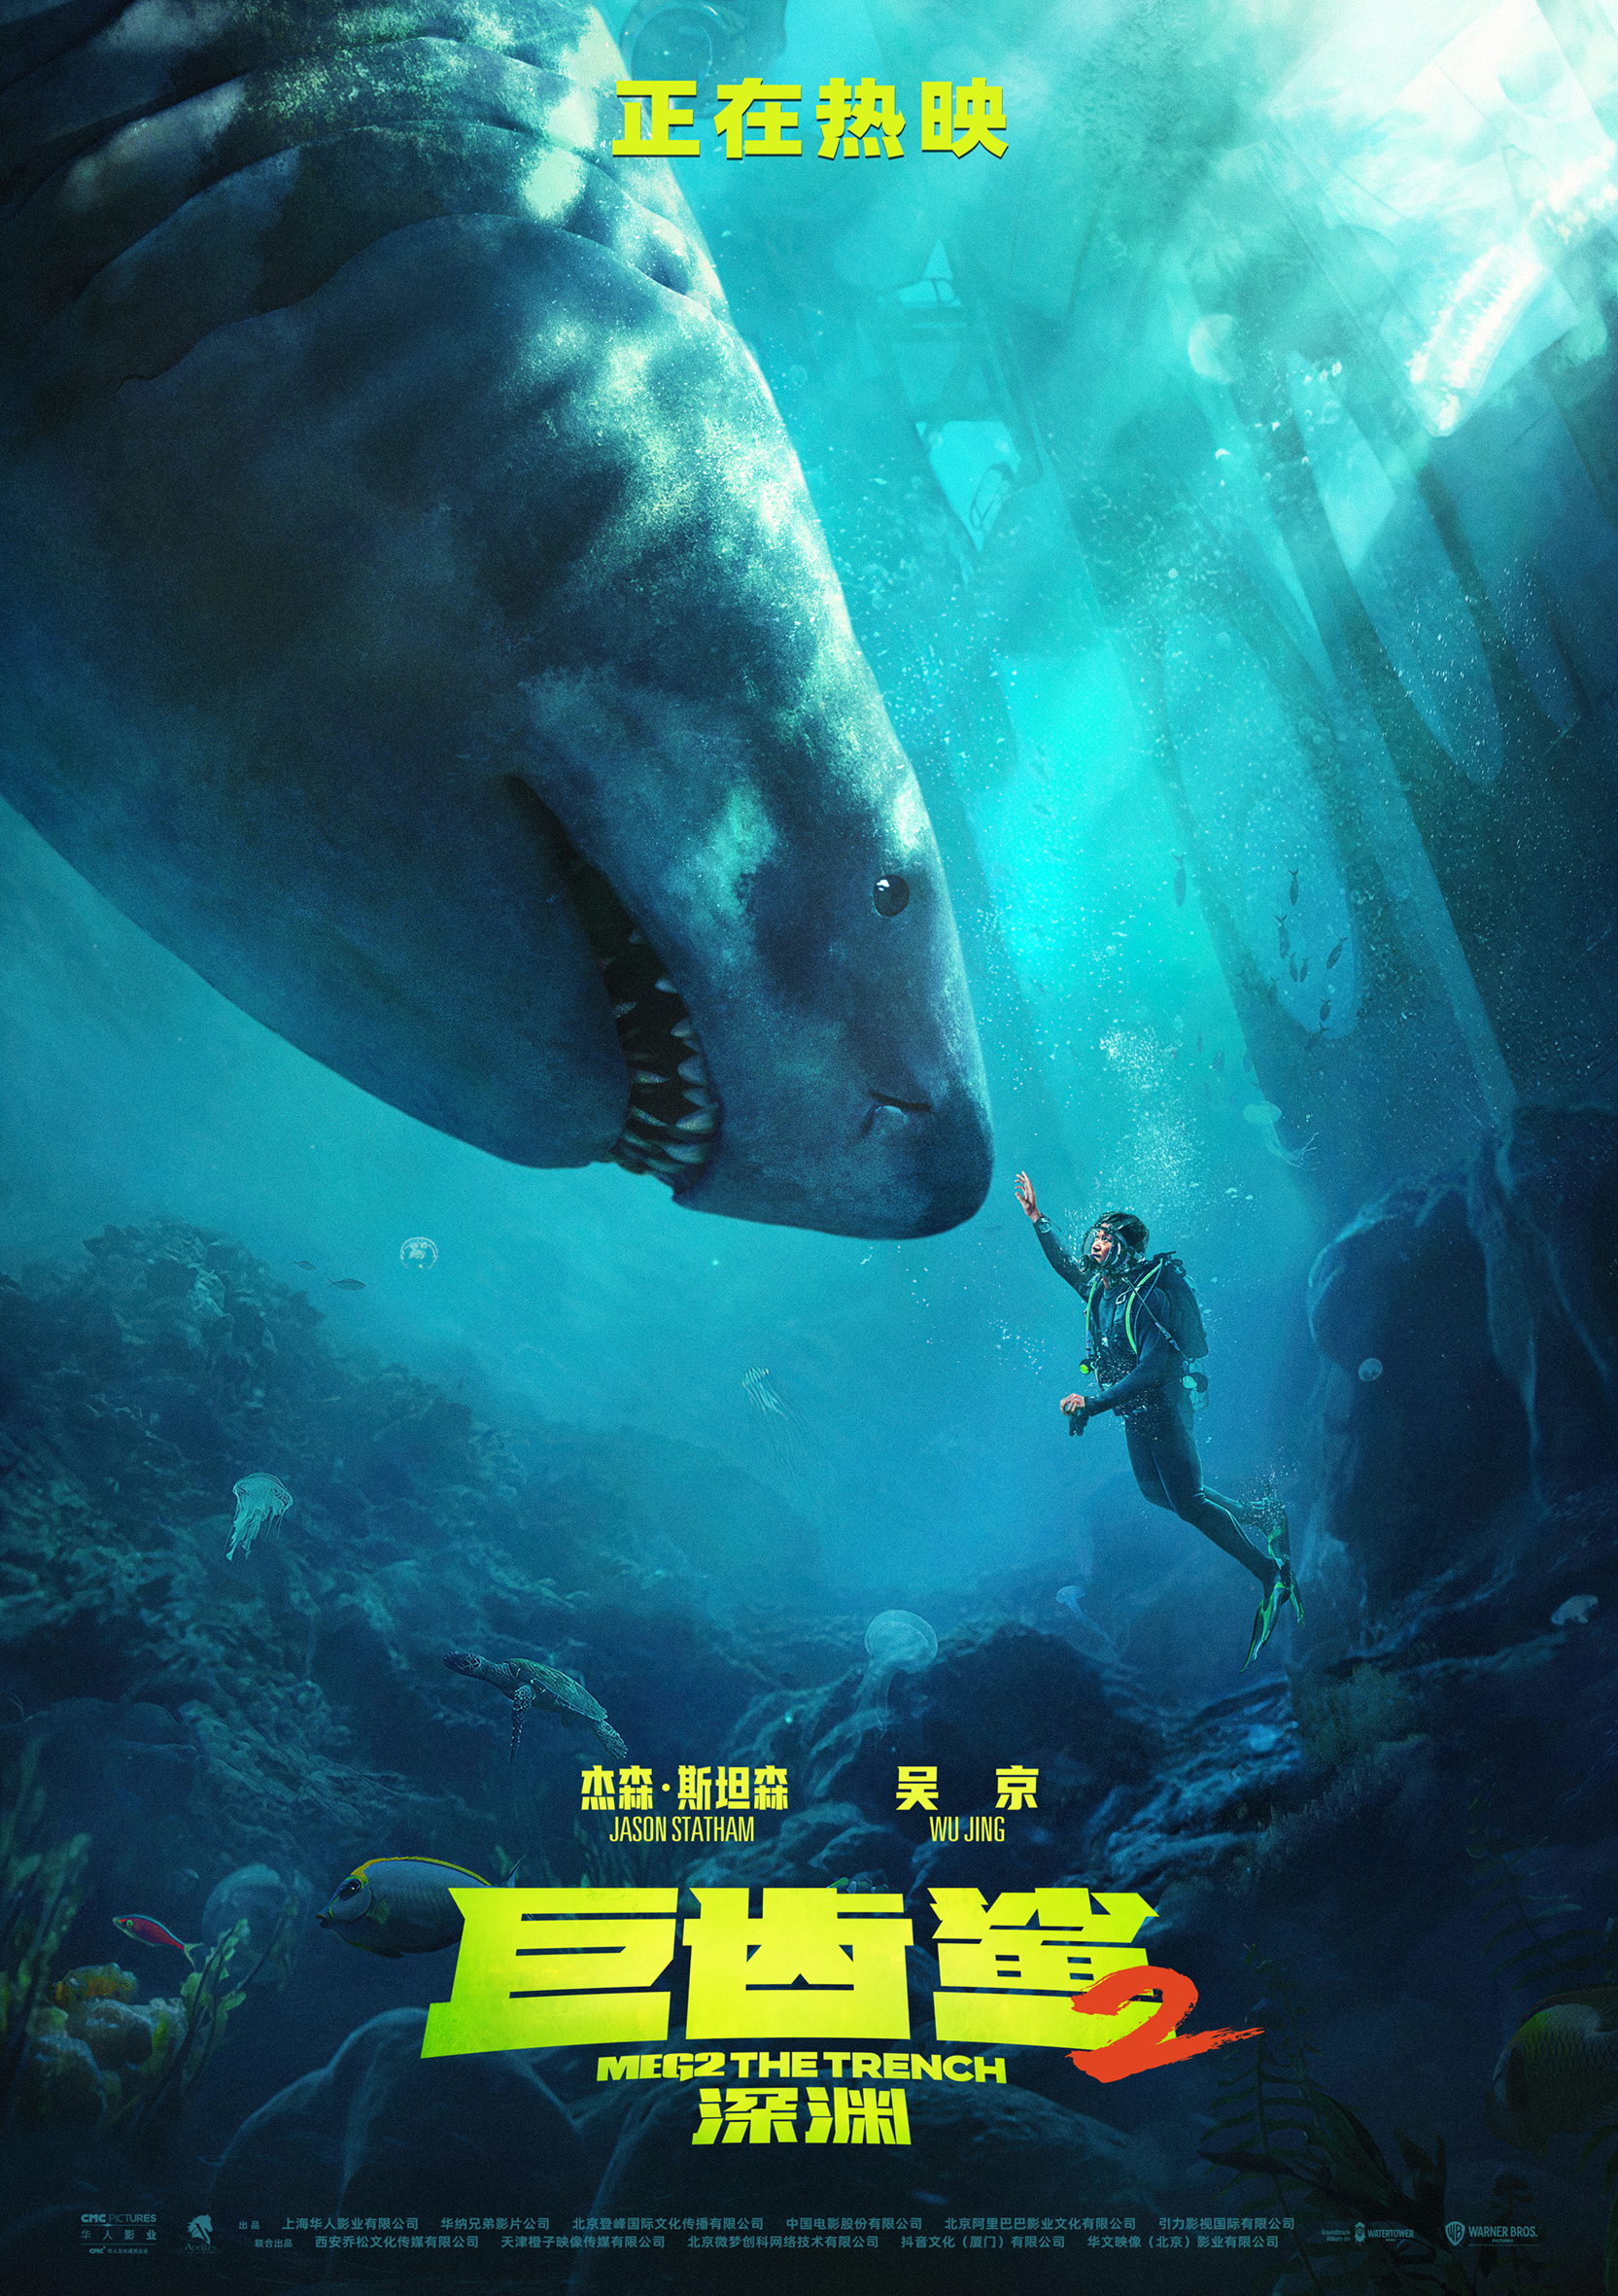 巨齿鲨,观众:被吴京和他的海基米触动,想带孩子体验精彩深海探险